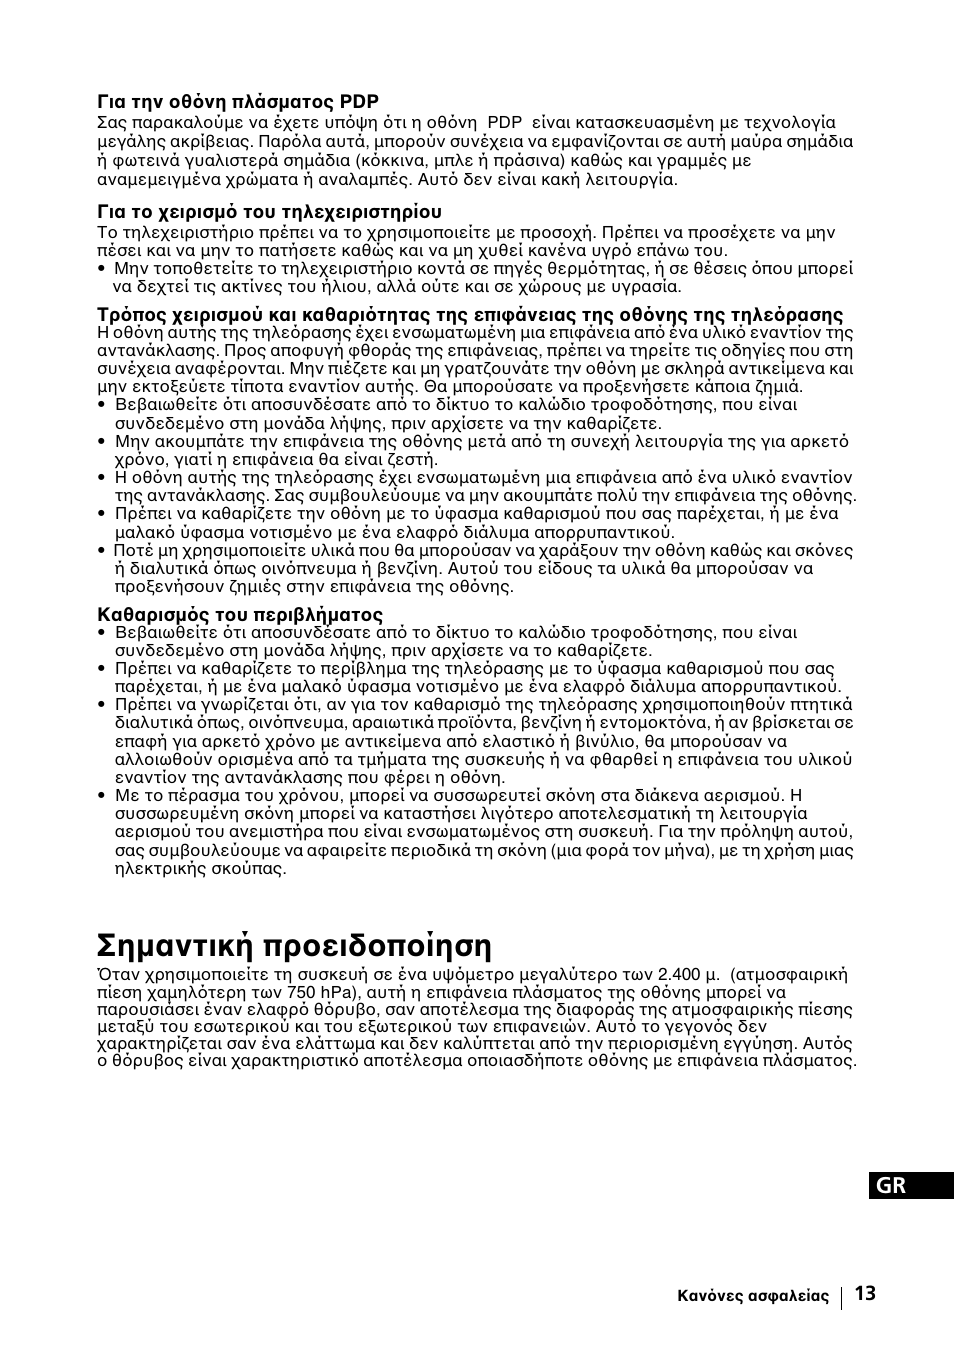 Σηµαντική προειδοποίηση | Sony KE-42MR1 Manuale d'uso | Pagina 239 / 302